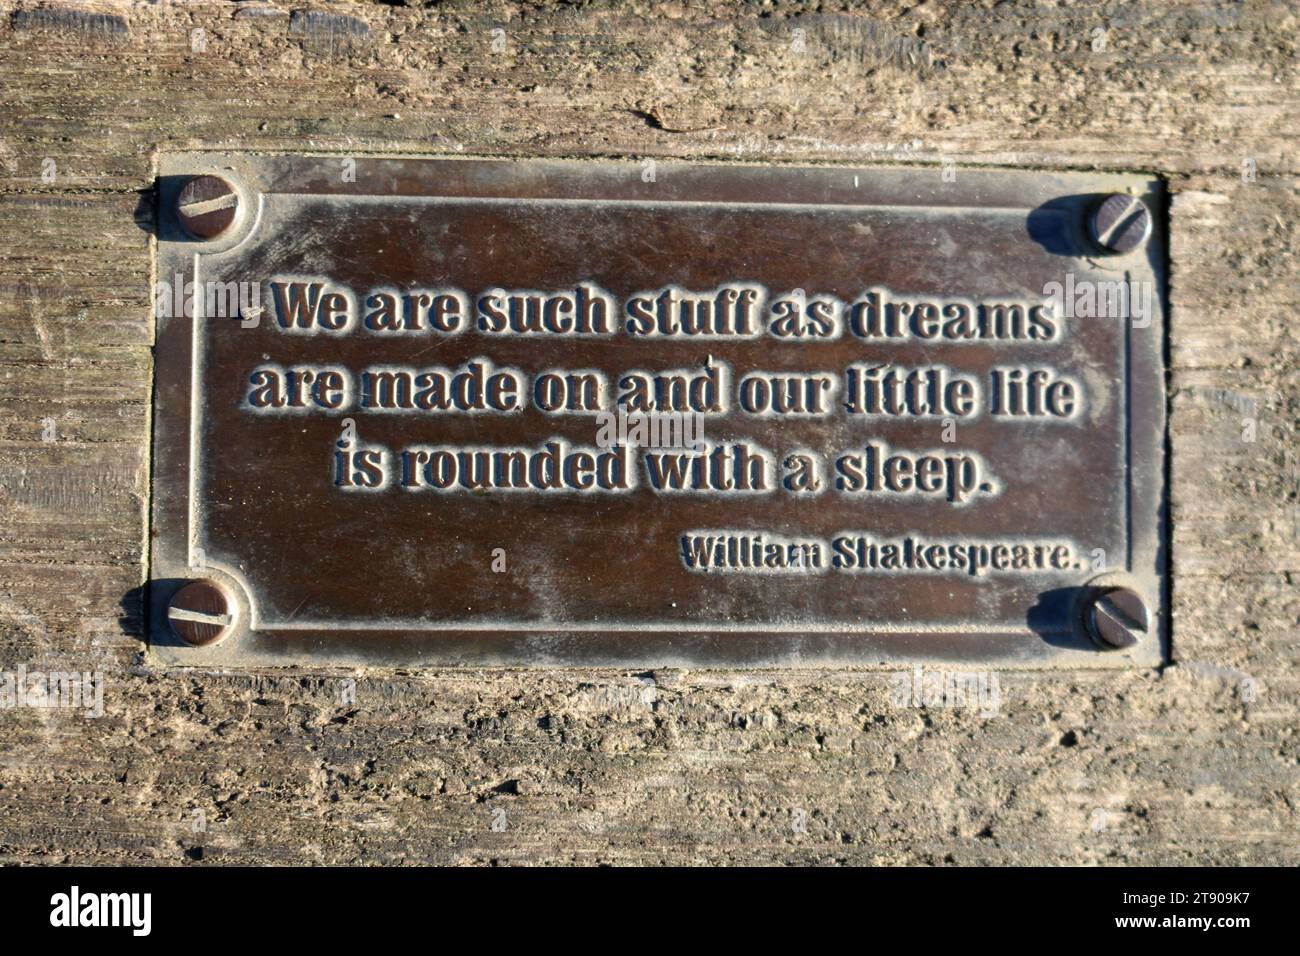 Citation shakespearienne sur une plaque sur un siège à Arnside Knott, Cumbria. Nous sommes des choses comme les rêves sont faits sur et notre petite vie est arrondie par un sommeil. Banque D'Images